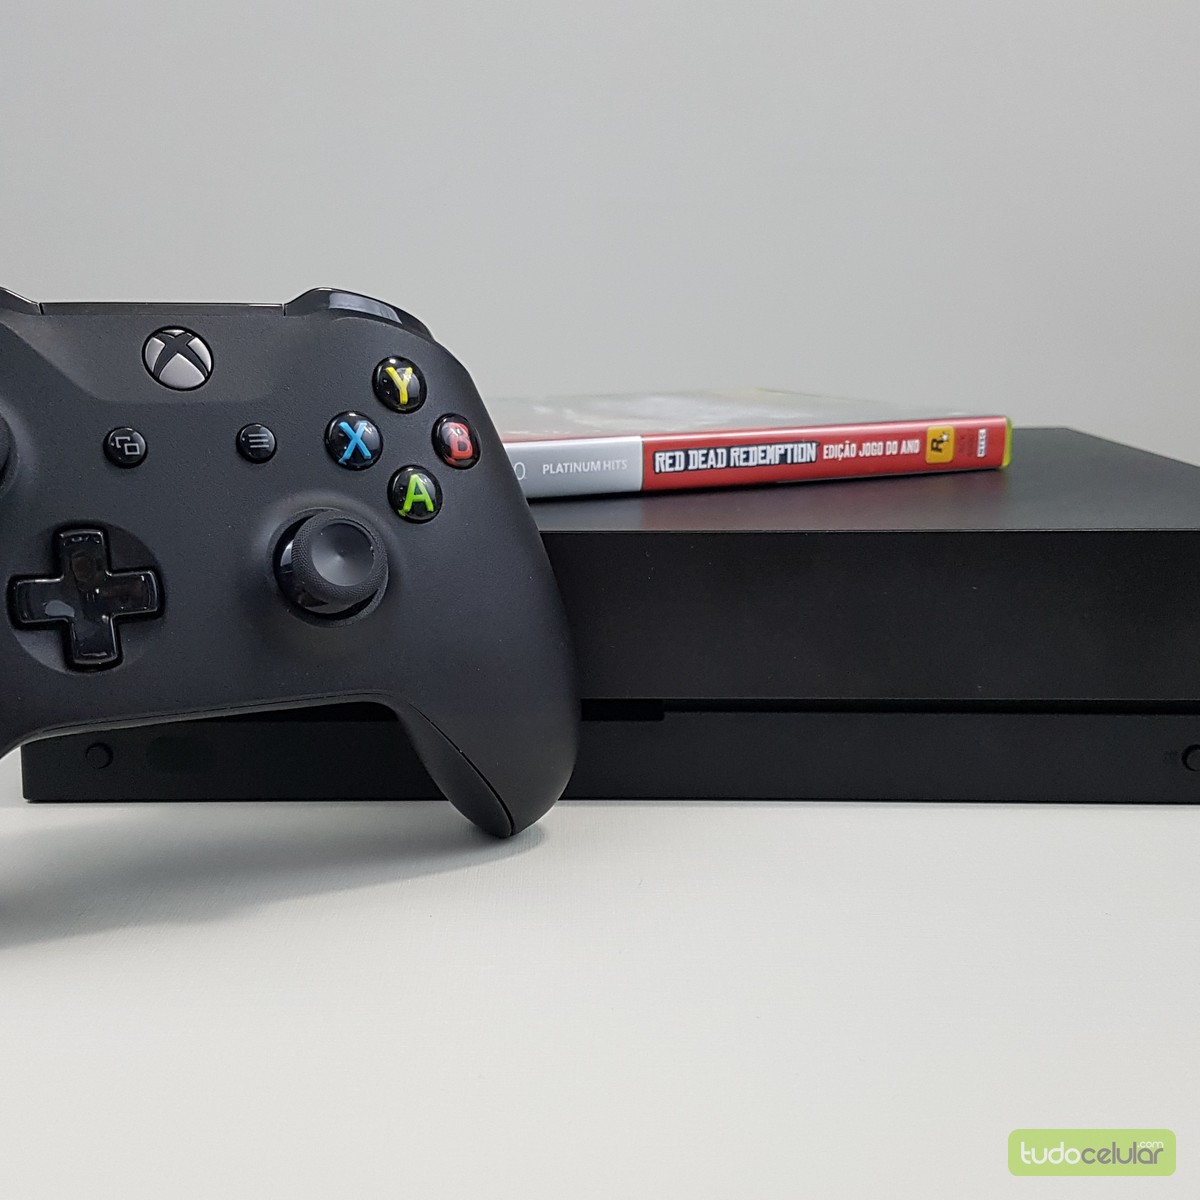 Forza Horizon 3 é lançado, mas exige hardware potente para rodar